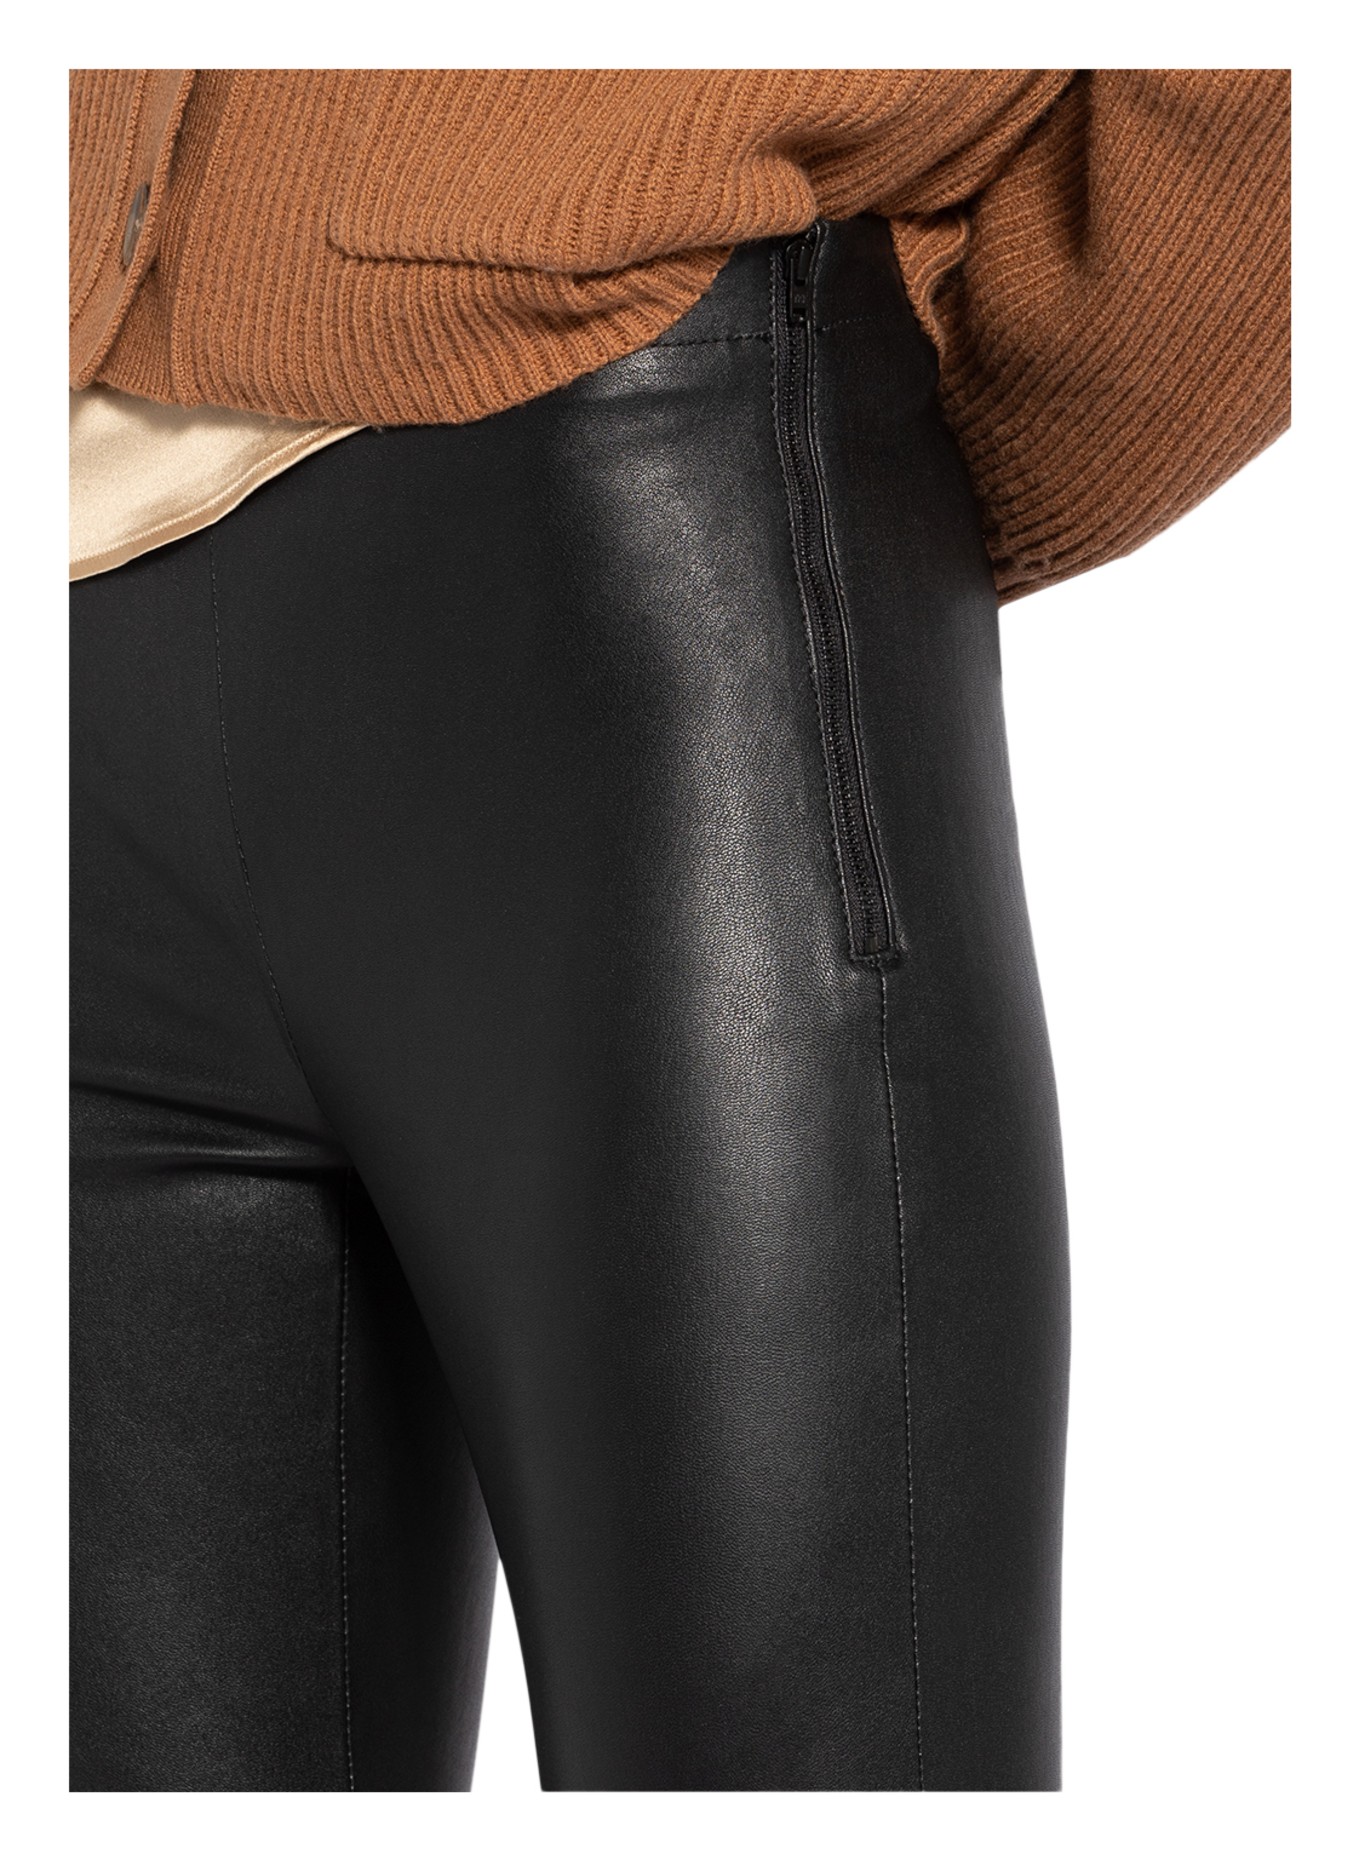 Topshop, Pants & Jumpsuits, Topshop Piper Black Faux Leather Leggings  Pants Trousers Size 4